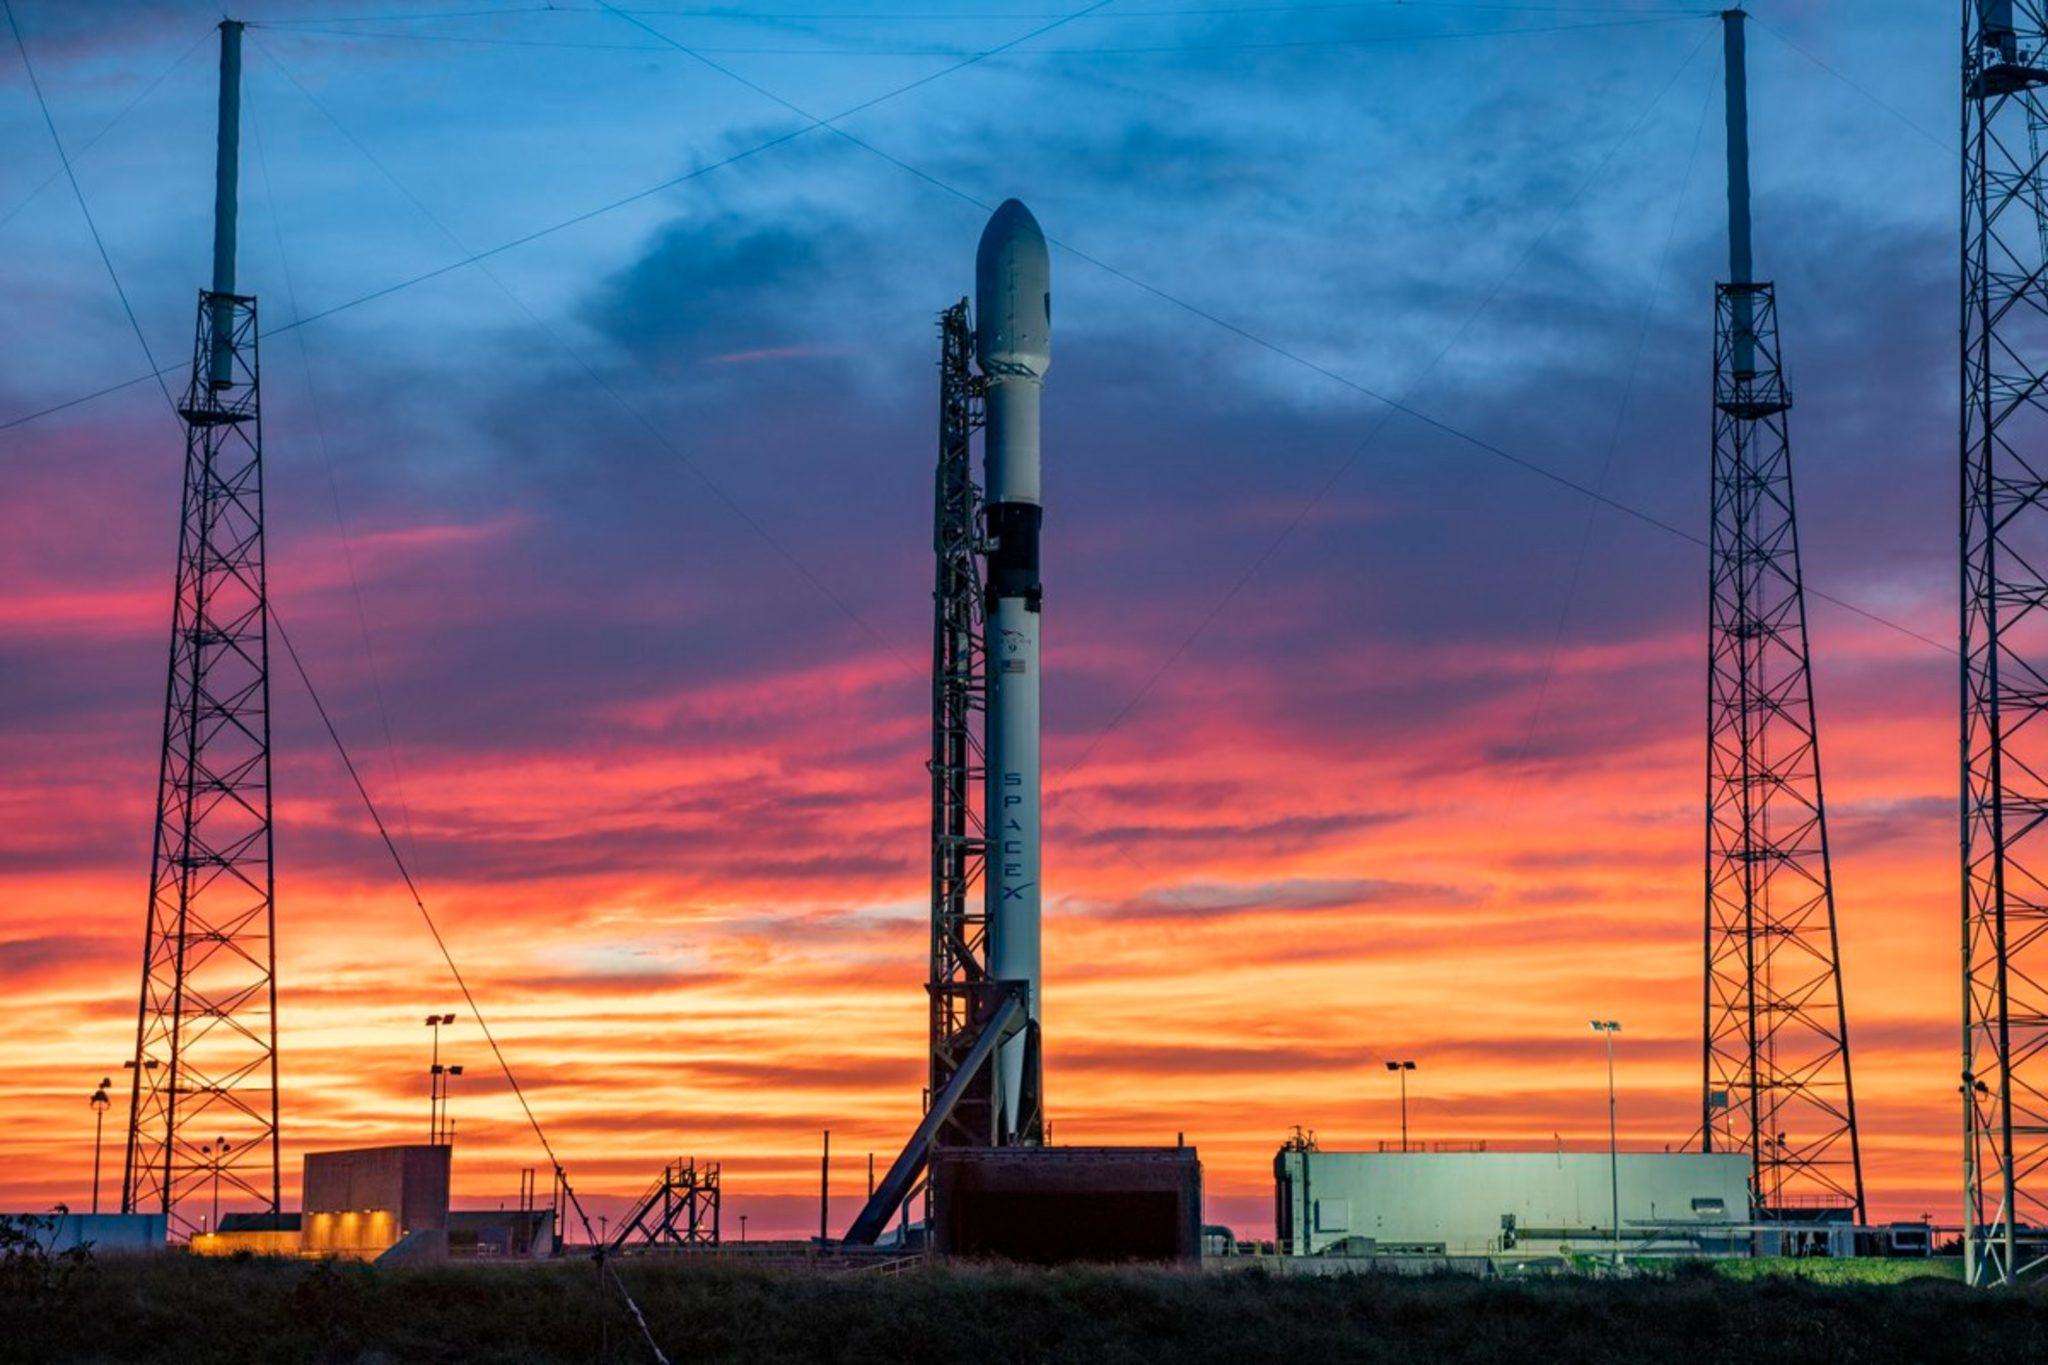 स्पेसएक्स सोमवार को 2021 का अपना पहला स्टारलिंक उपग्रह लॉन्च करेगा,कैसें देखें,जानें रिपोर्ट